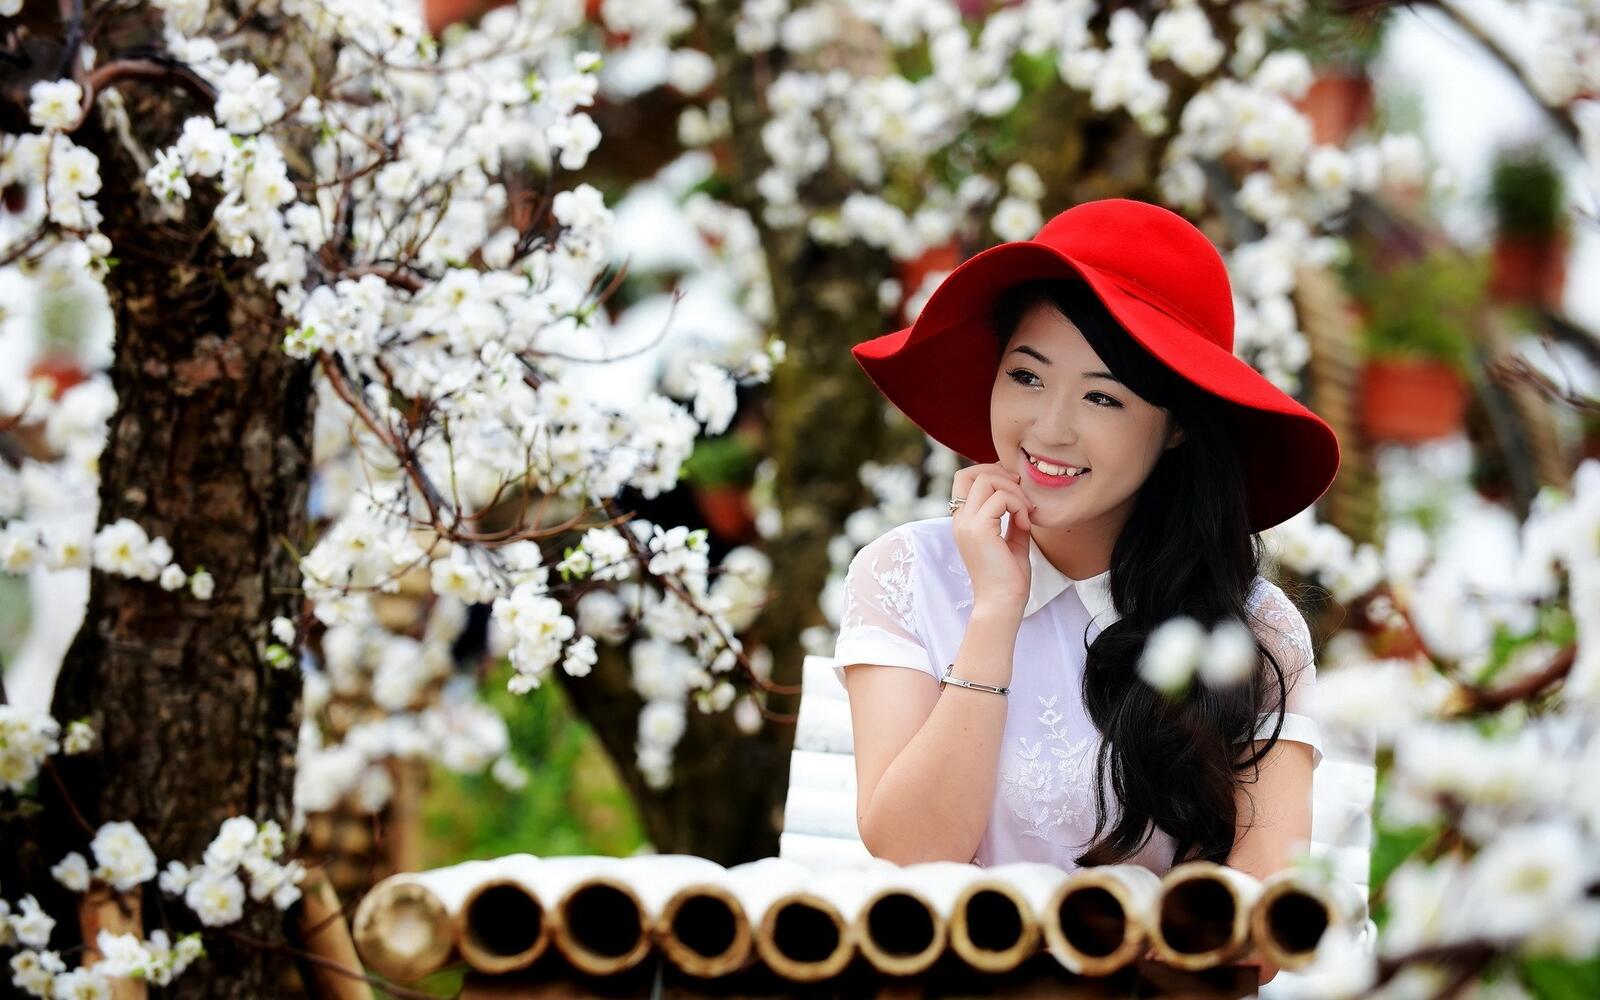 Бесплатное фото Девушка в красной шляпе азиатской внешности